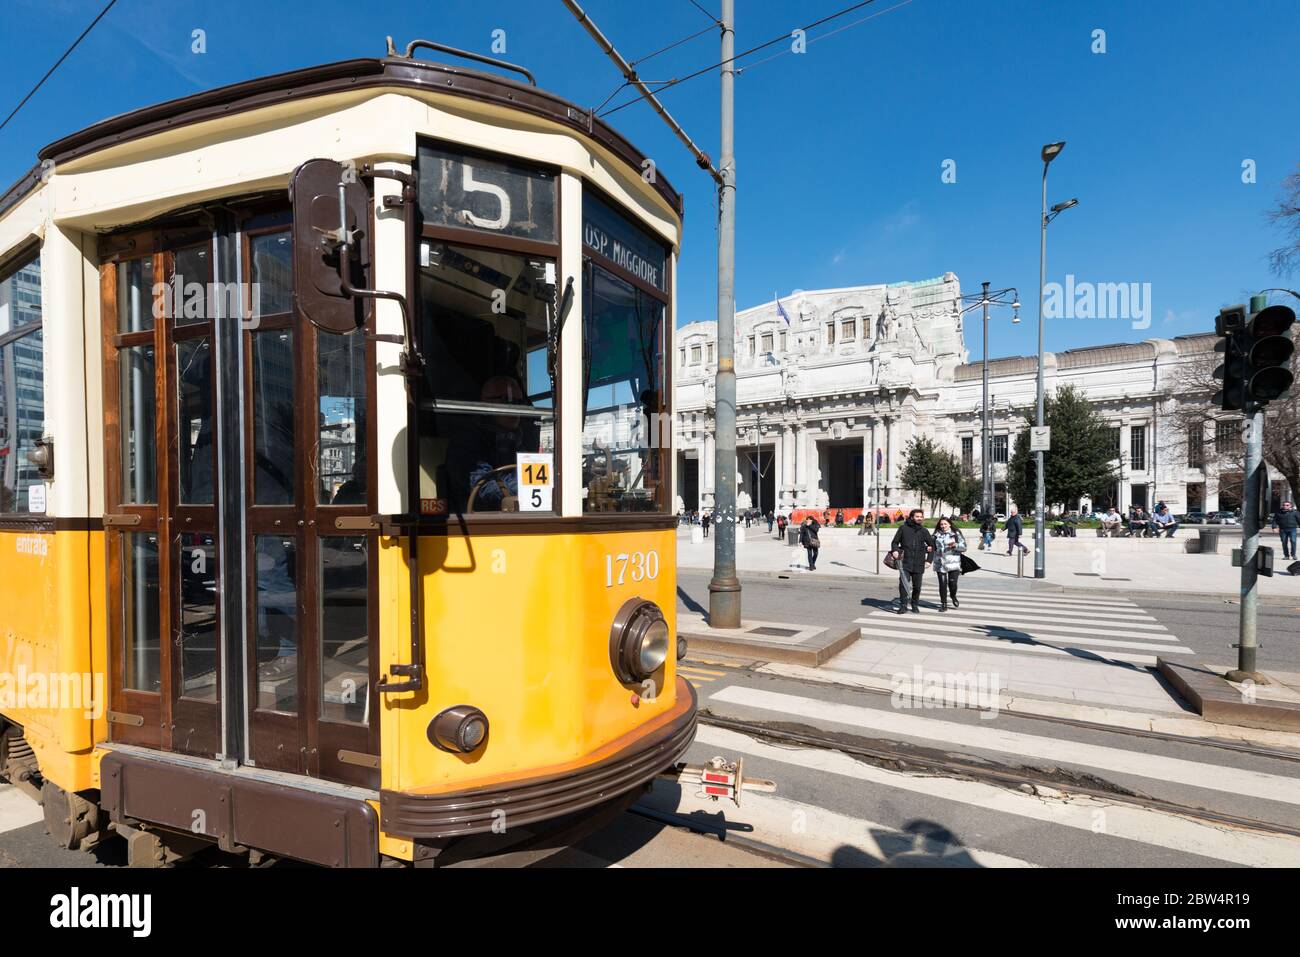 MILANO, ITALIA - 16 MARZO 2018: Immagine orizzontale del tram giallo di fronte alla Stazione Centrale di Milano Foto Stock